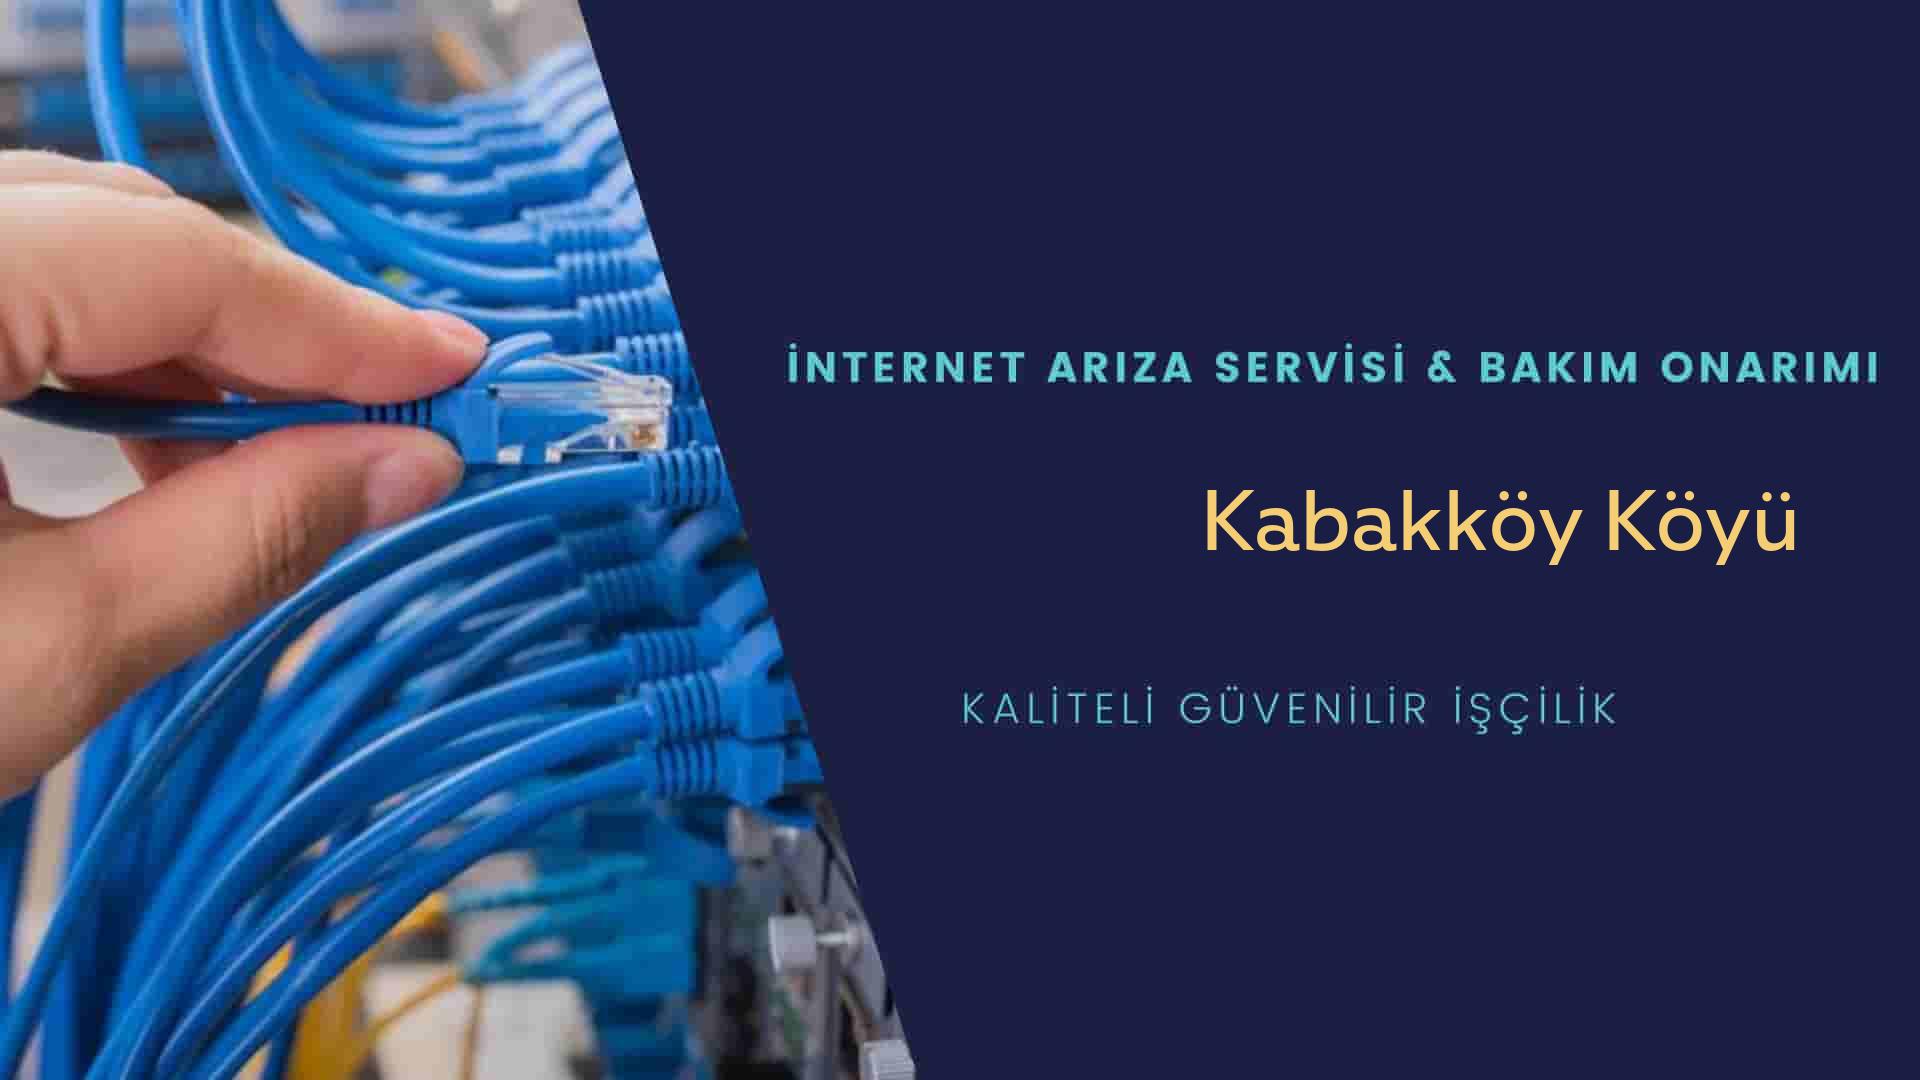 Kabakköy Köyü internet kablosu çekimi yapan yerler veya elektrikçiler mi? arıyorsunuz doğru yerdesiniz o zaman sizlere 7/24 yardımcı olacak profesyonel ustalarımız bir telefon kadar yakındır size.